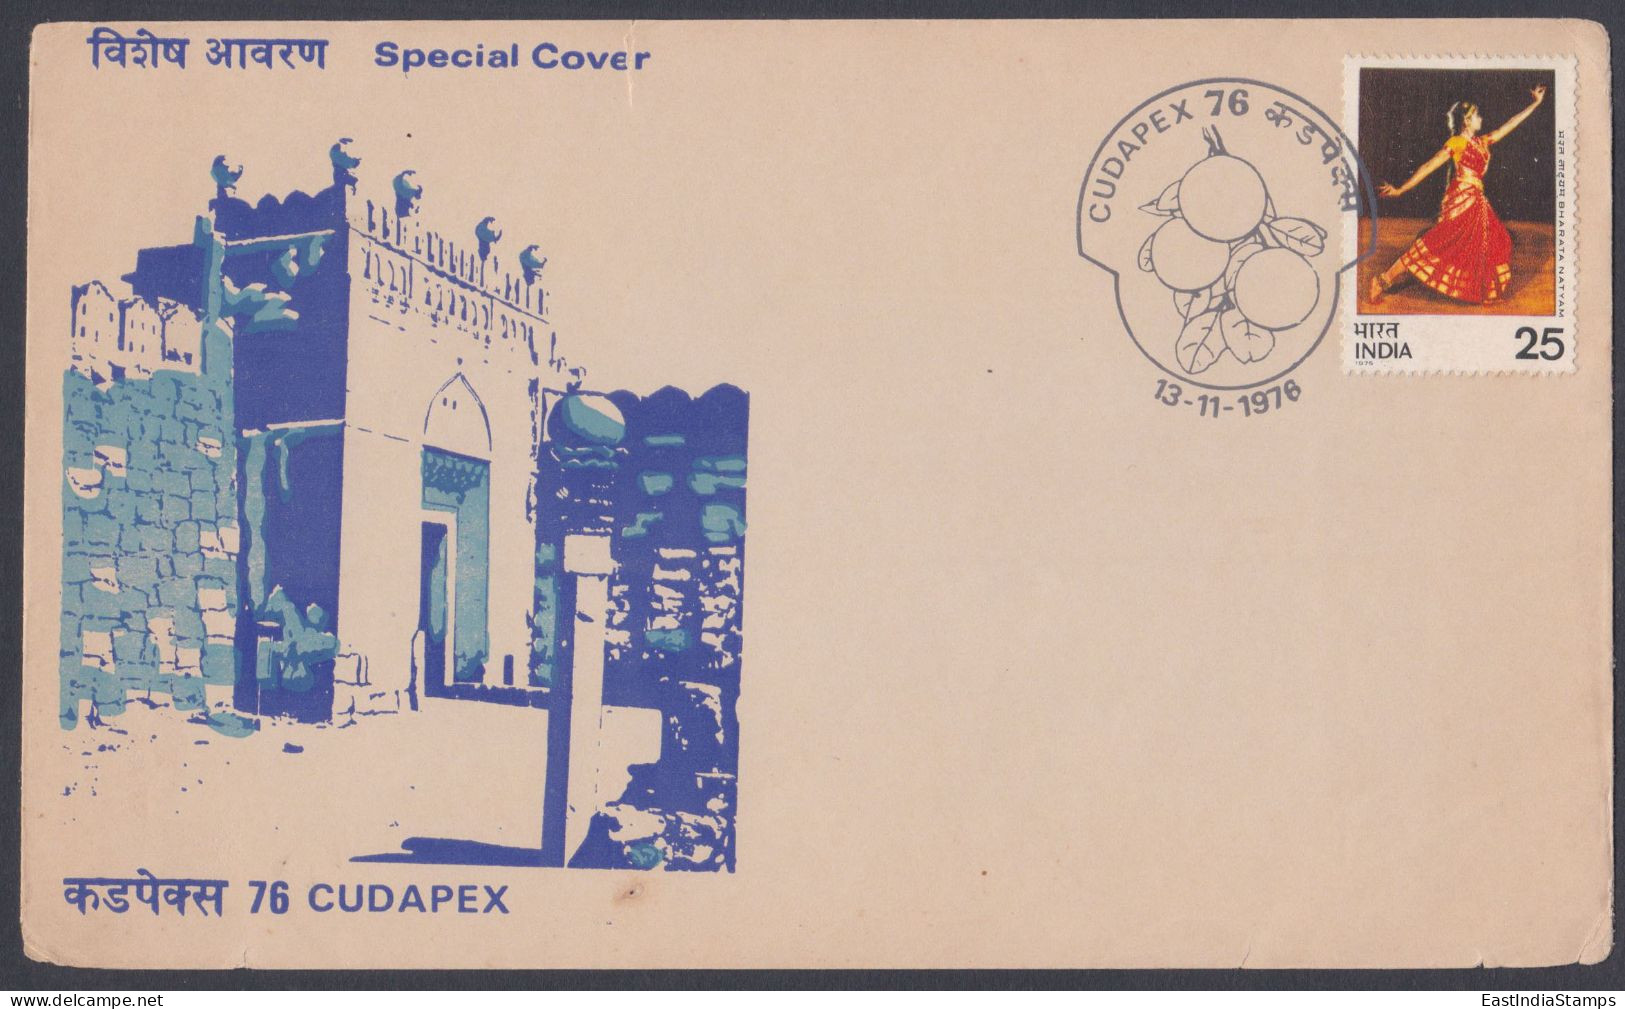 Inde India 1976 Special Cover Cudapex Stamp Exhibition, Gandi Kota Fort, Architecture, Fruit Pictorial Postmark - Cartas & Documentos